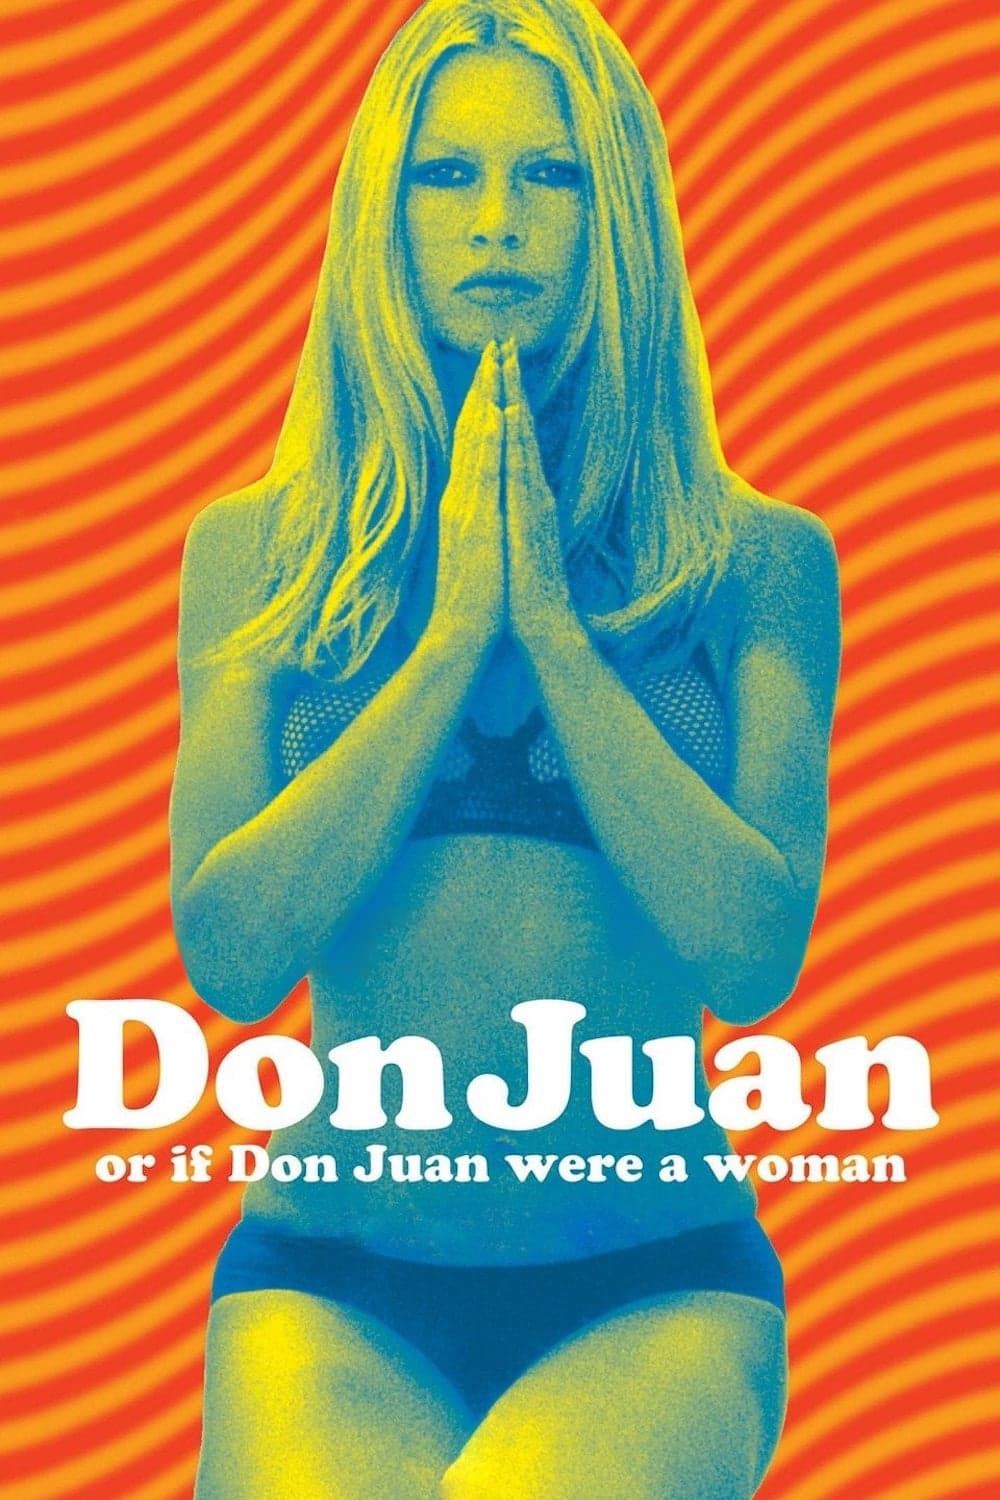 Don Juan 73 (1973)